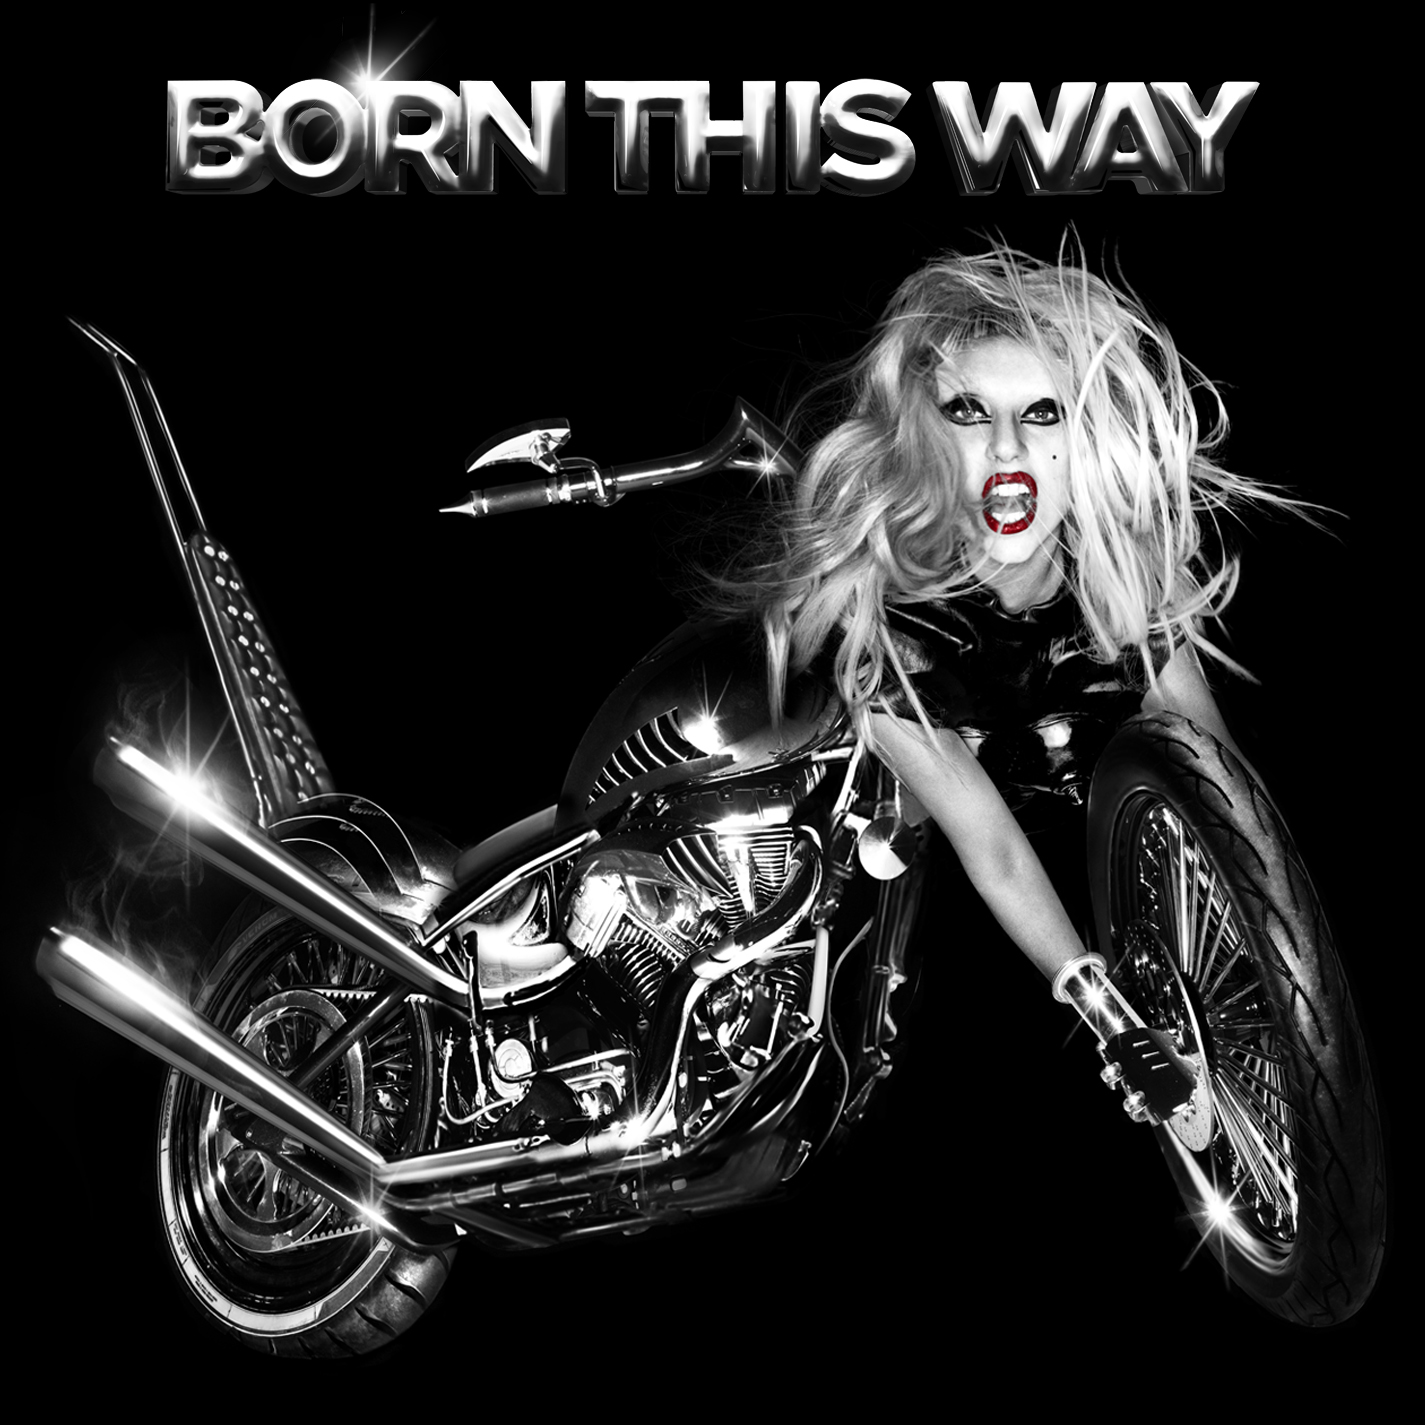 http://3.bp.blogspot.com/-X2ldq6TatIc/TeLFW_u5VII/AAAAAAAAAHg/WRL2EX4CIZw/s1600/Lady+Gaga+-+Born+This+Way+%2528Standard+Edition%2529.jpg